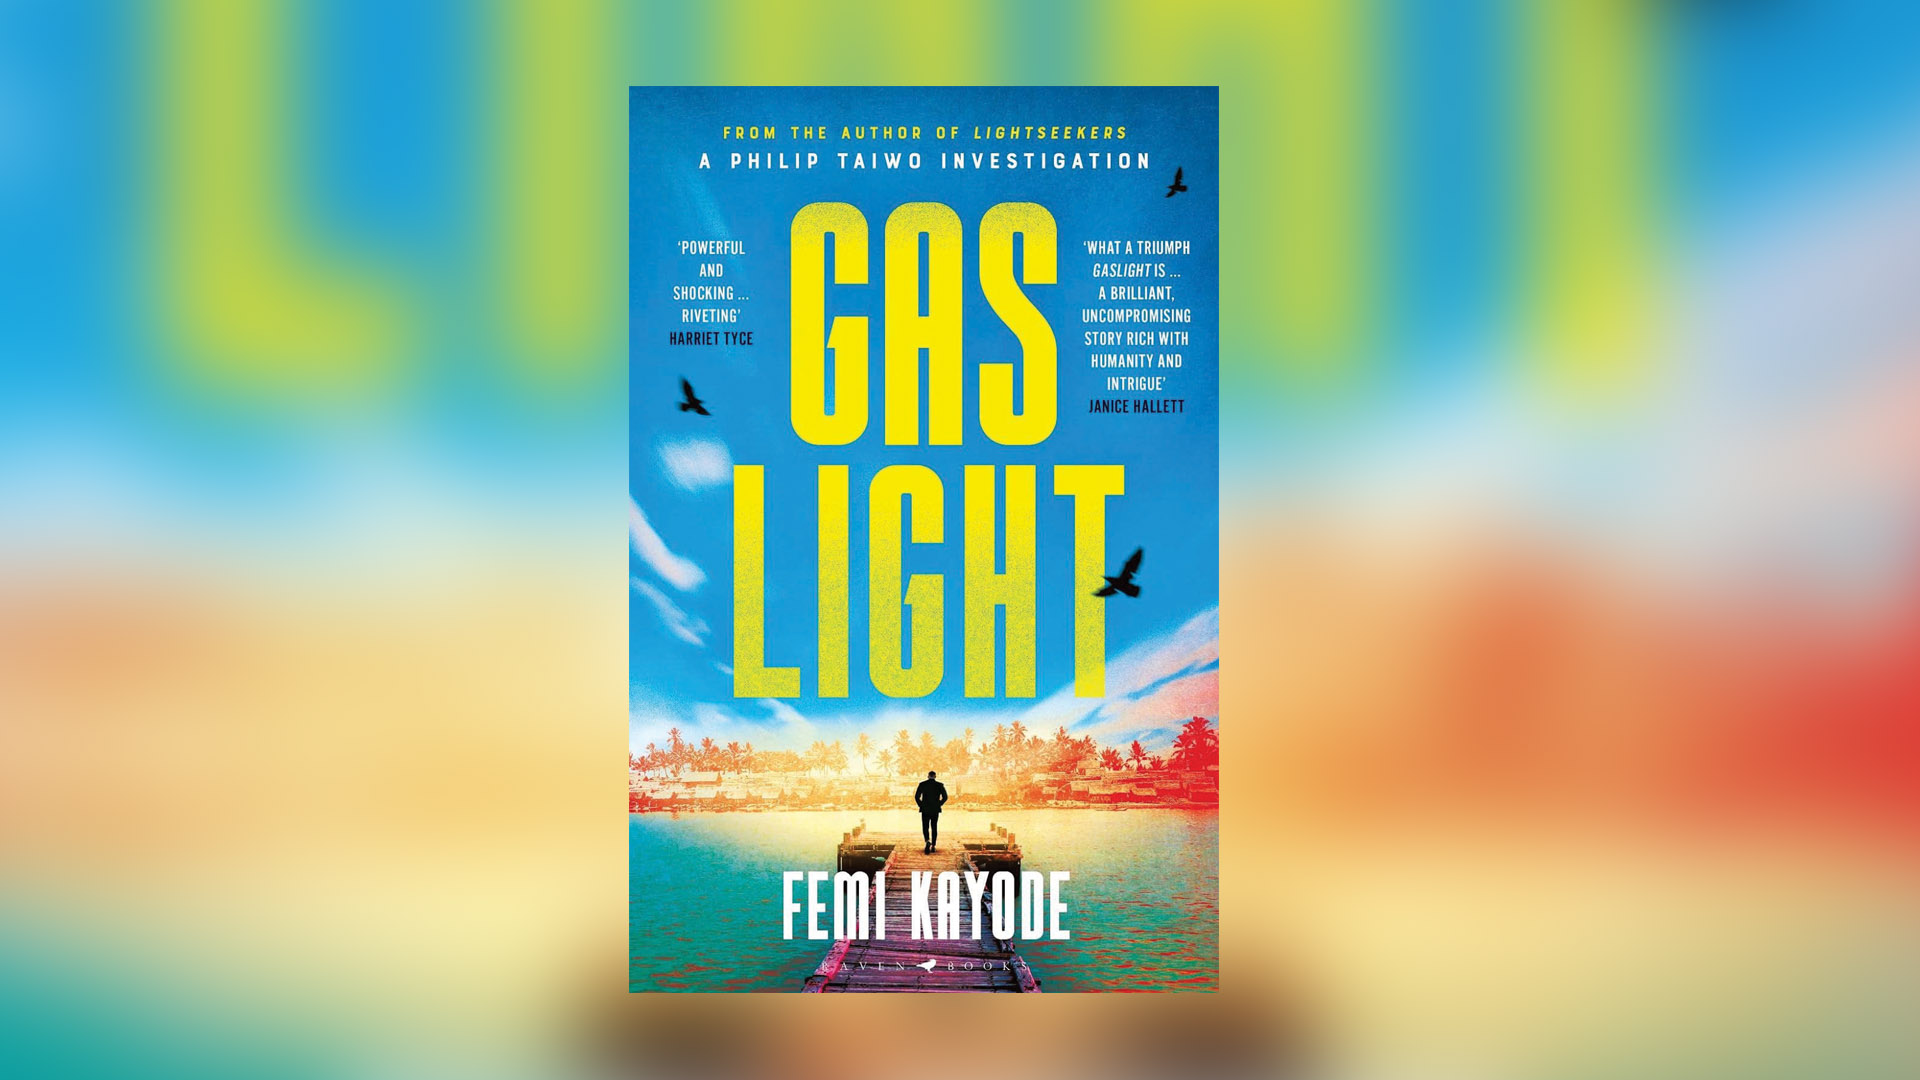 Gaslight by Femi Kayode